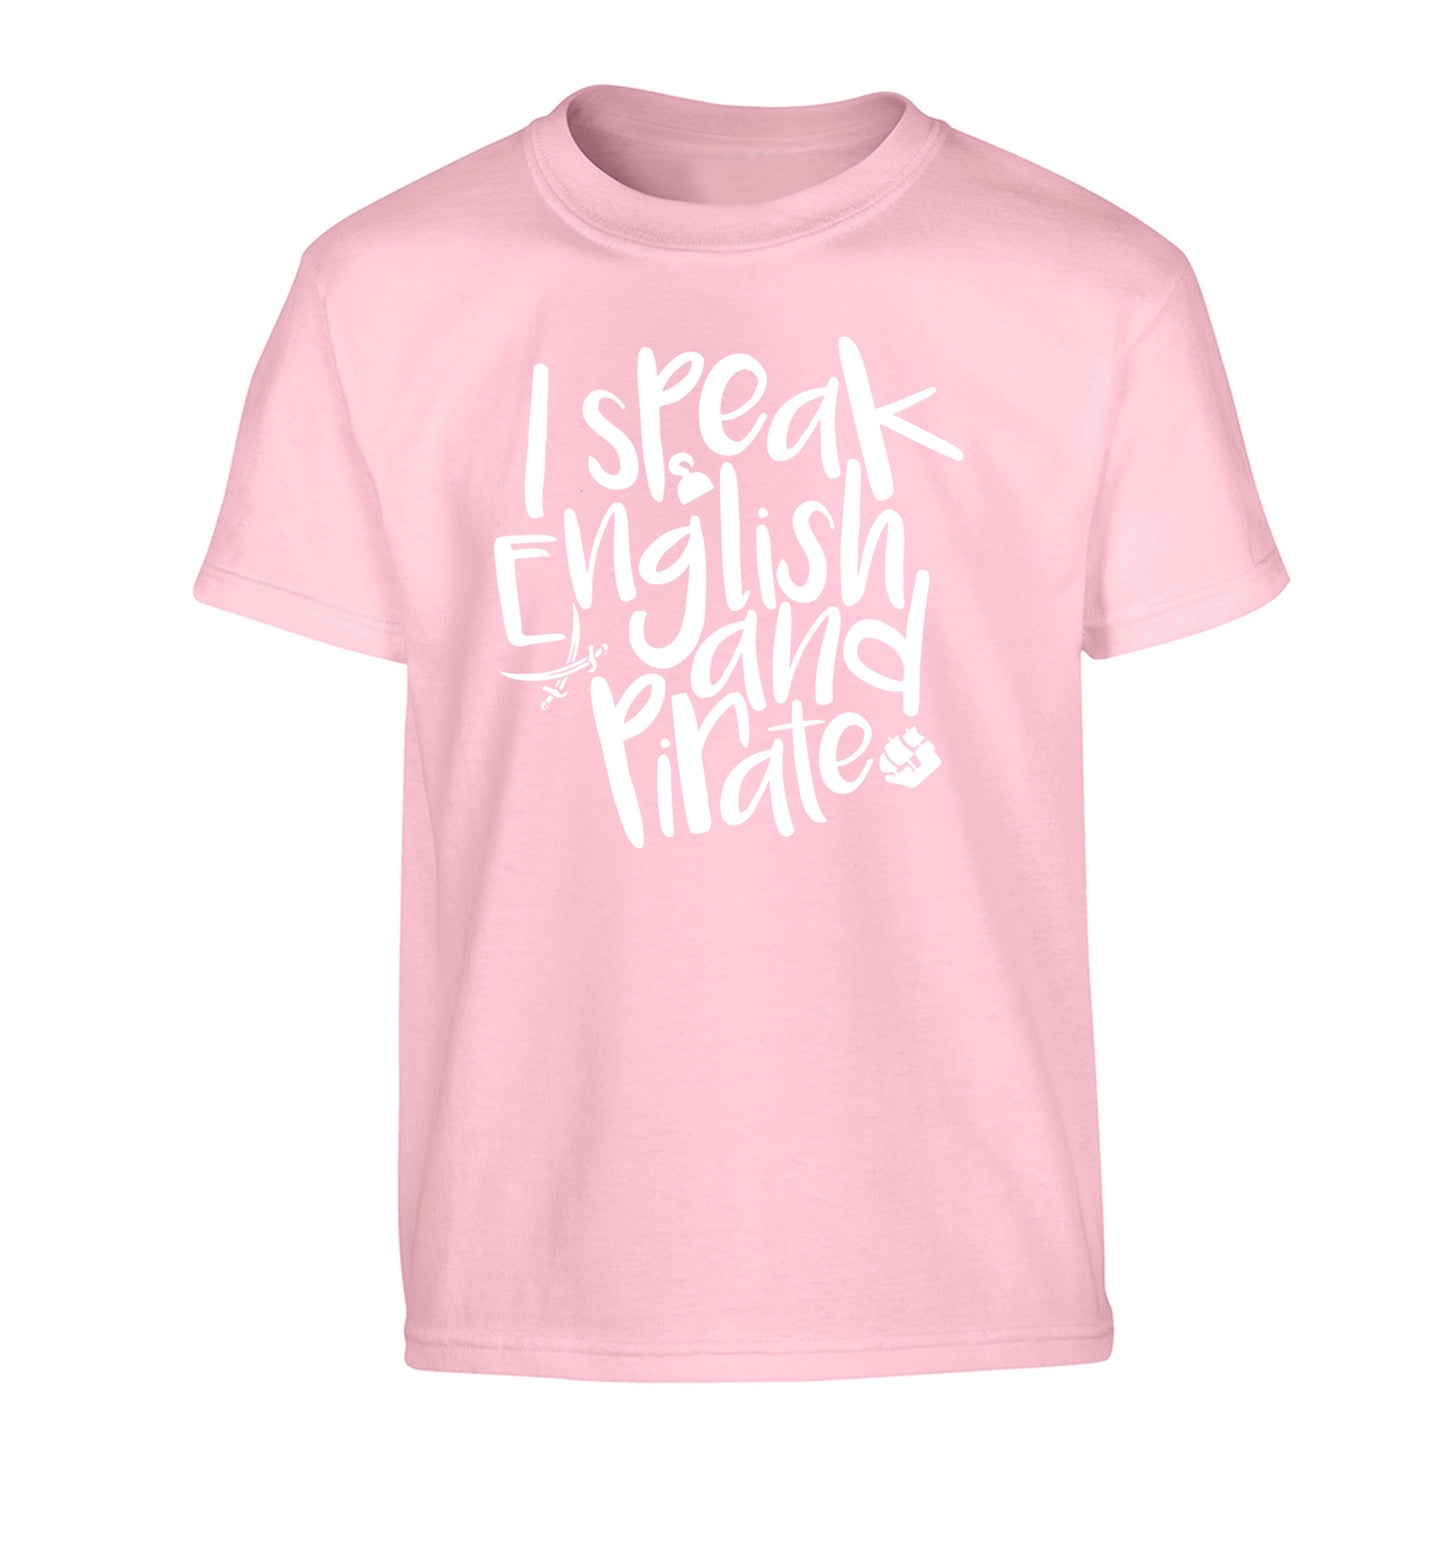 I speak English and pirate Children's light pink Tshirt 12-13 Years